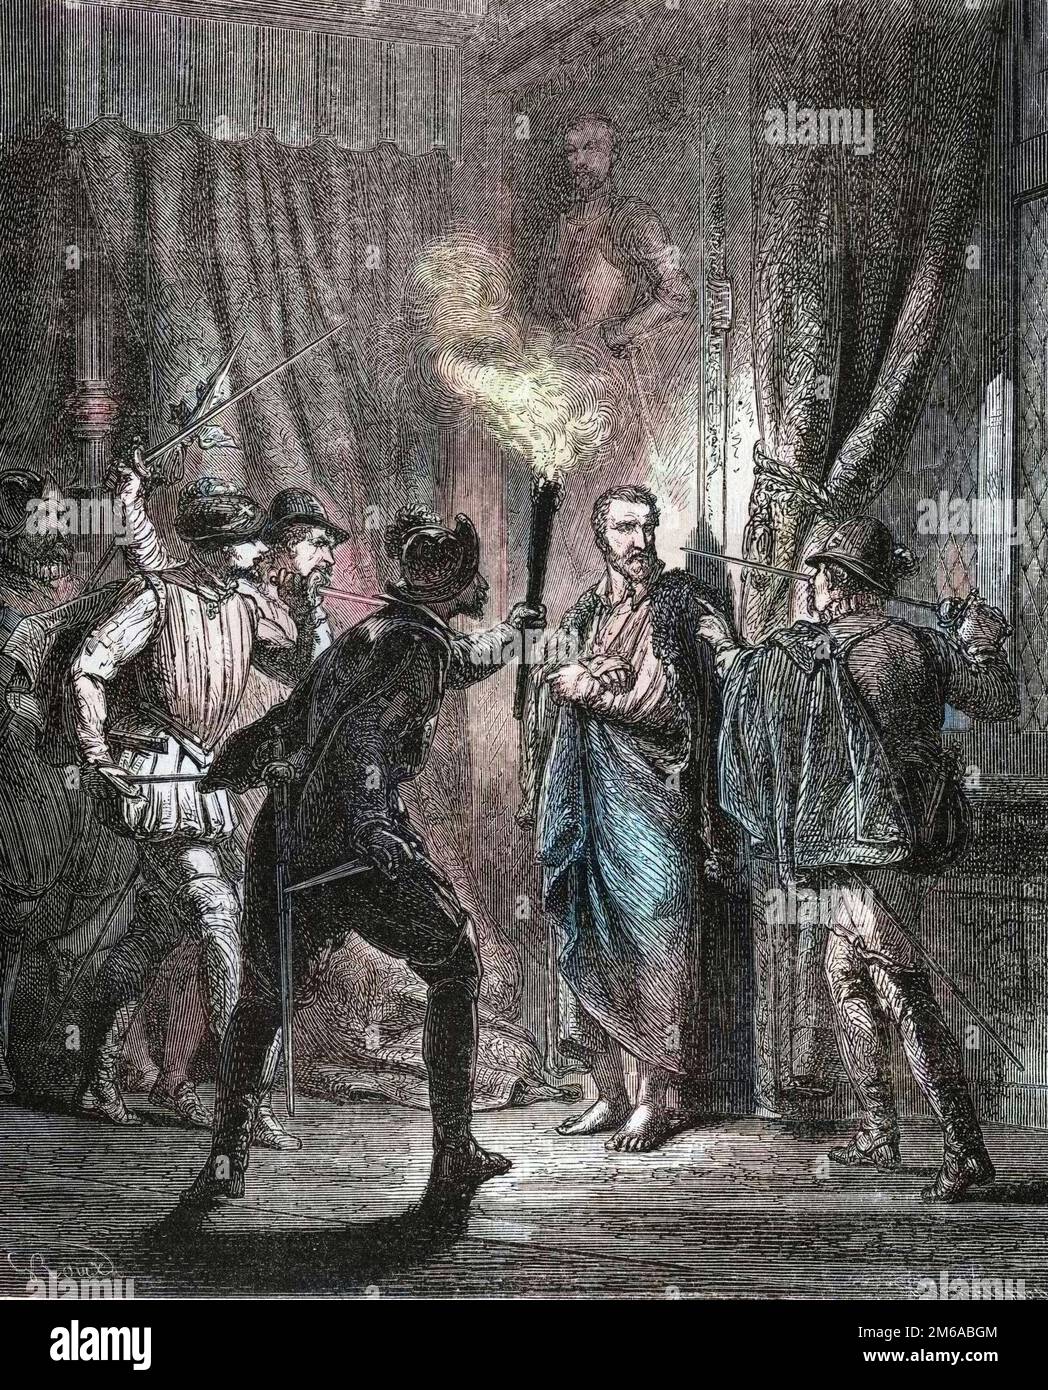 Assassinat de l'Amiral de Coligny, lors du massacre de la Saint-Bartelemy en 1572. In 'Histoire Populaire de la France', vers 1885. Gravure. Stock Photo